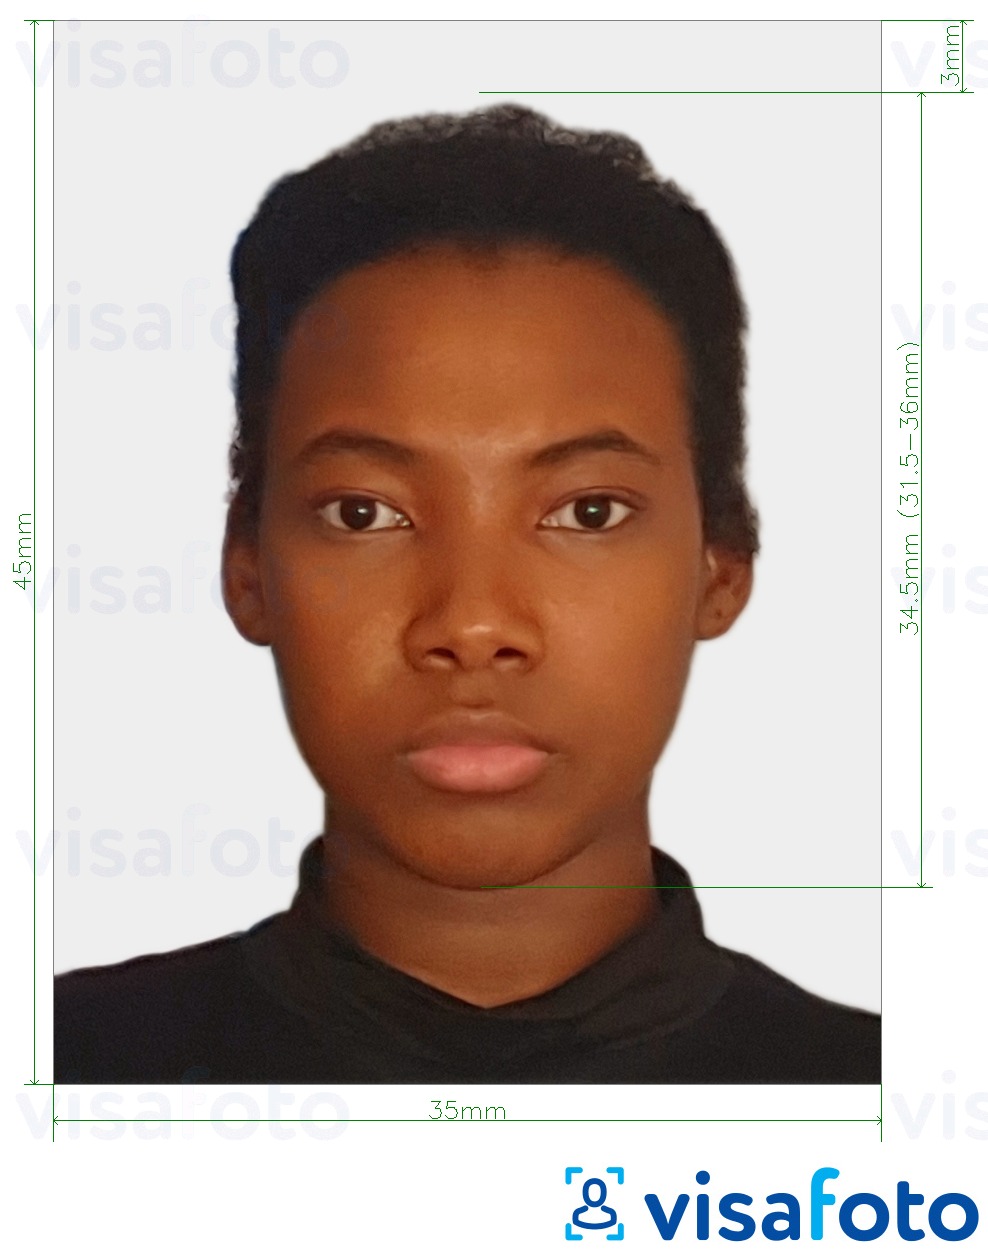 Contoh dari foto untuk Visa Cote d'Ivoire 4.5x3.5 cm (45x35 mm) dengan ukuran spesifikasi yang tepat